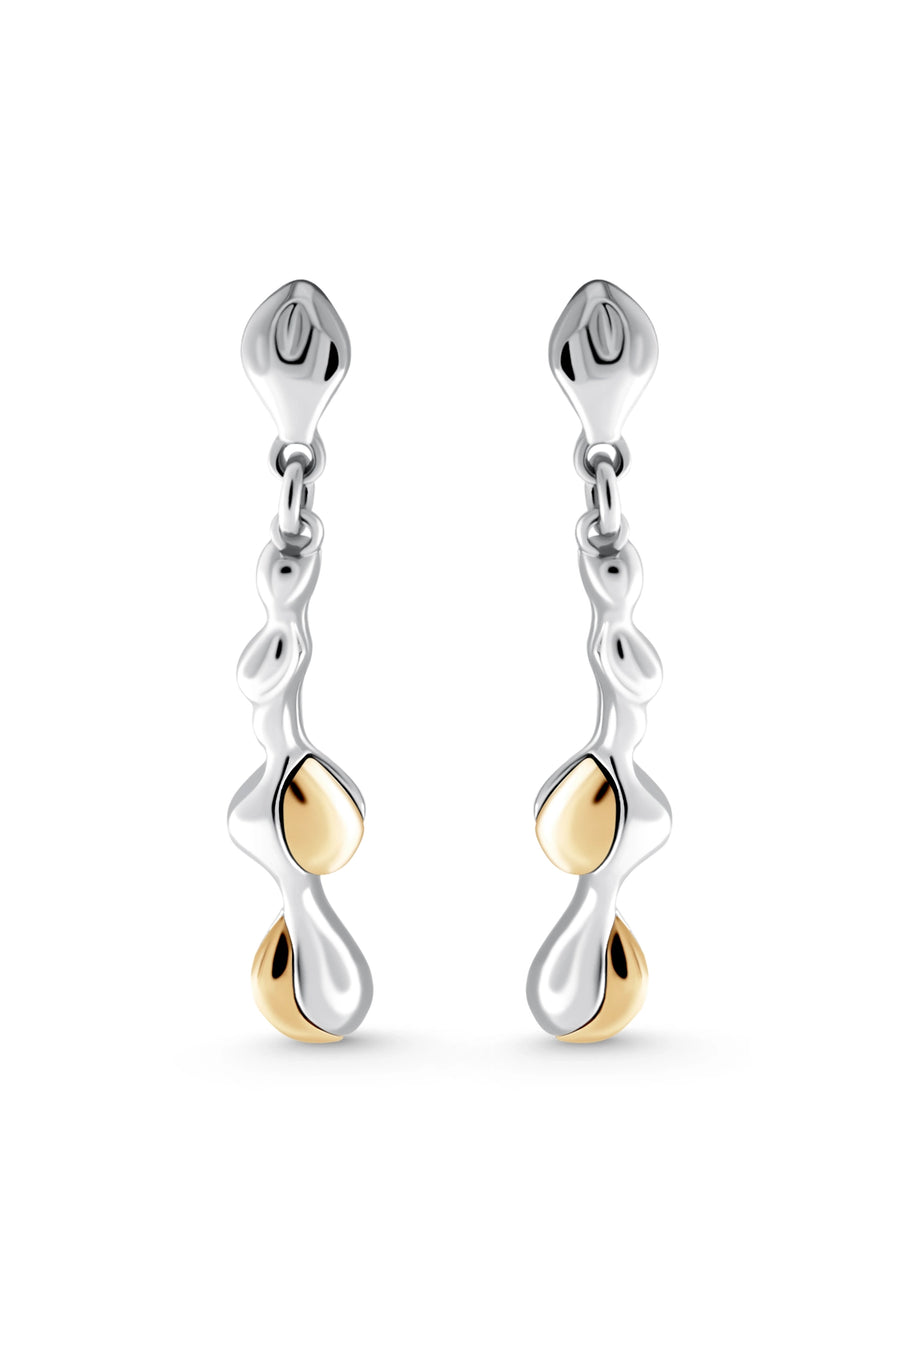 ELYSIAN Earrings. Two-tone string of beads drop earrings, 18K gold vermeil, handmade, hypoallergenic, water-resistant